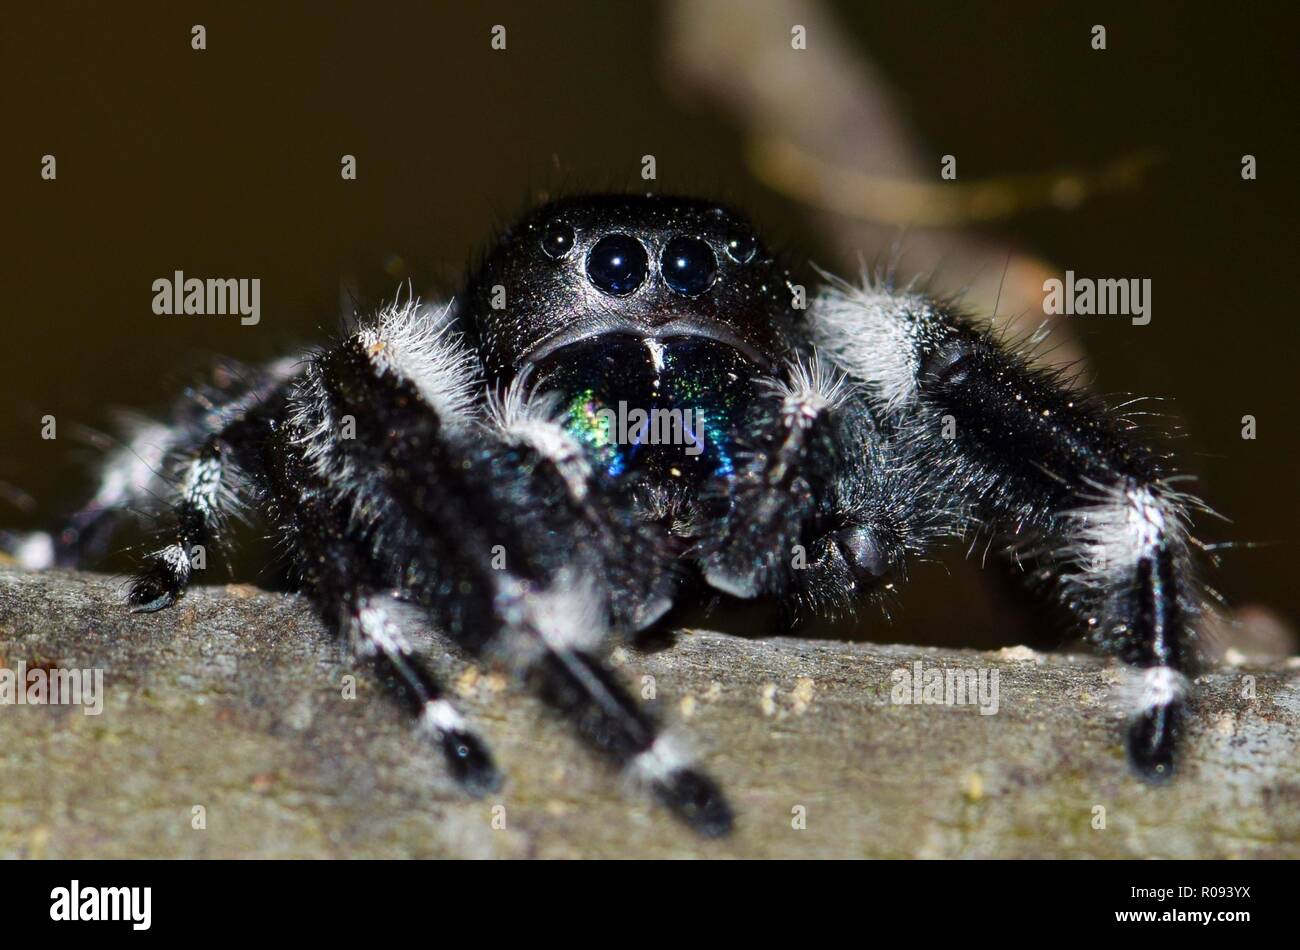 Una bastante grande en negrita Jumping spider eyes la cámara cautelosamente y mantiene una distancia segura. Estas saltando las arañas son bastante comunes y también bastante inofensivos. Foto de stock